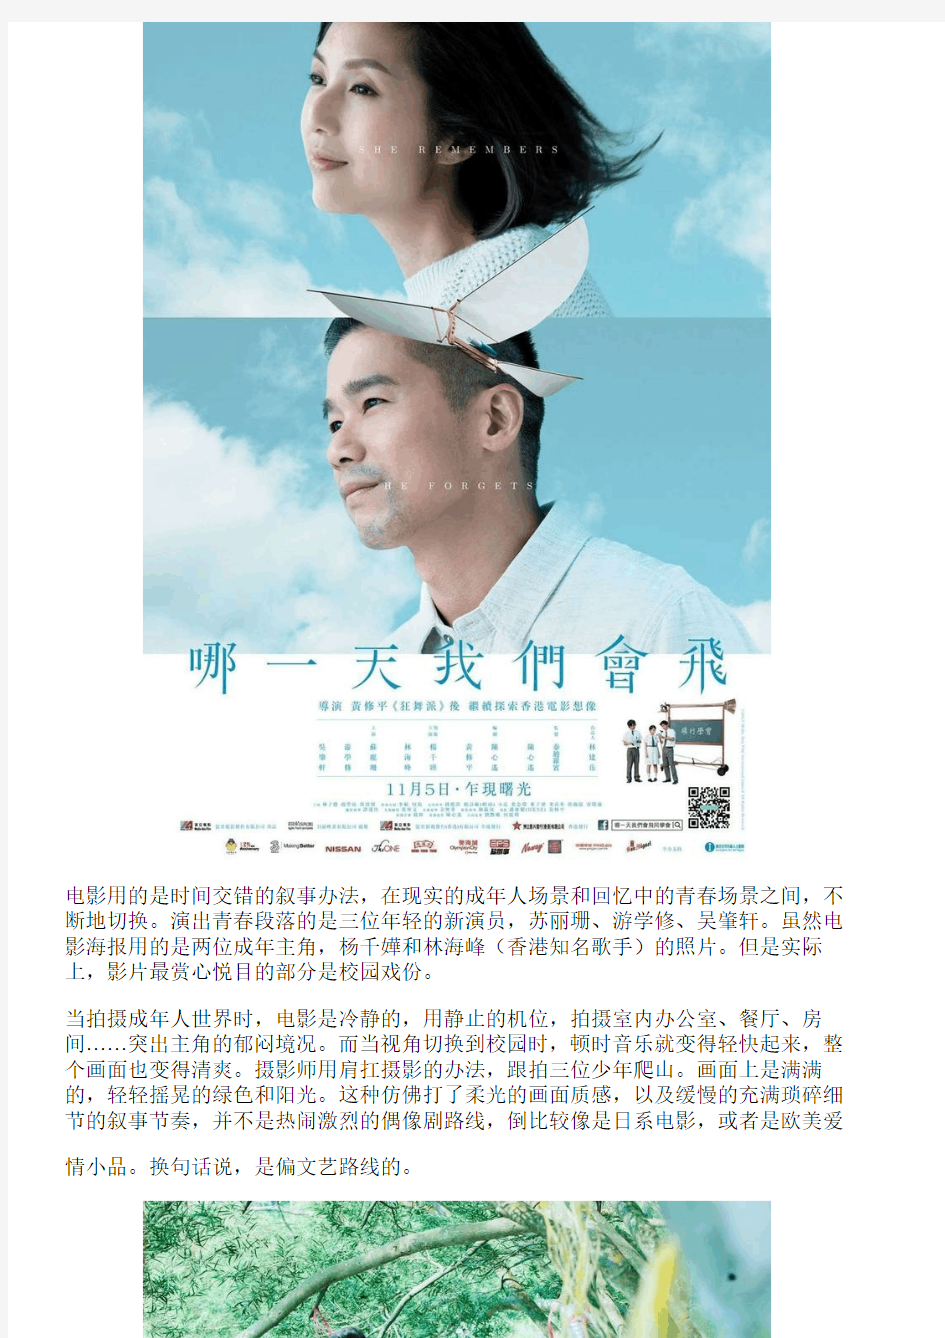 这部香港青春片,讲的其实是成年人的纠结